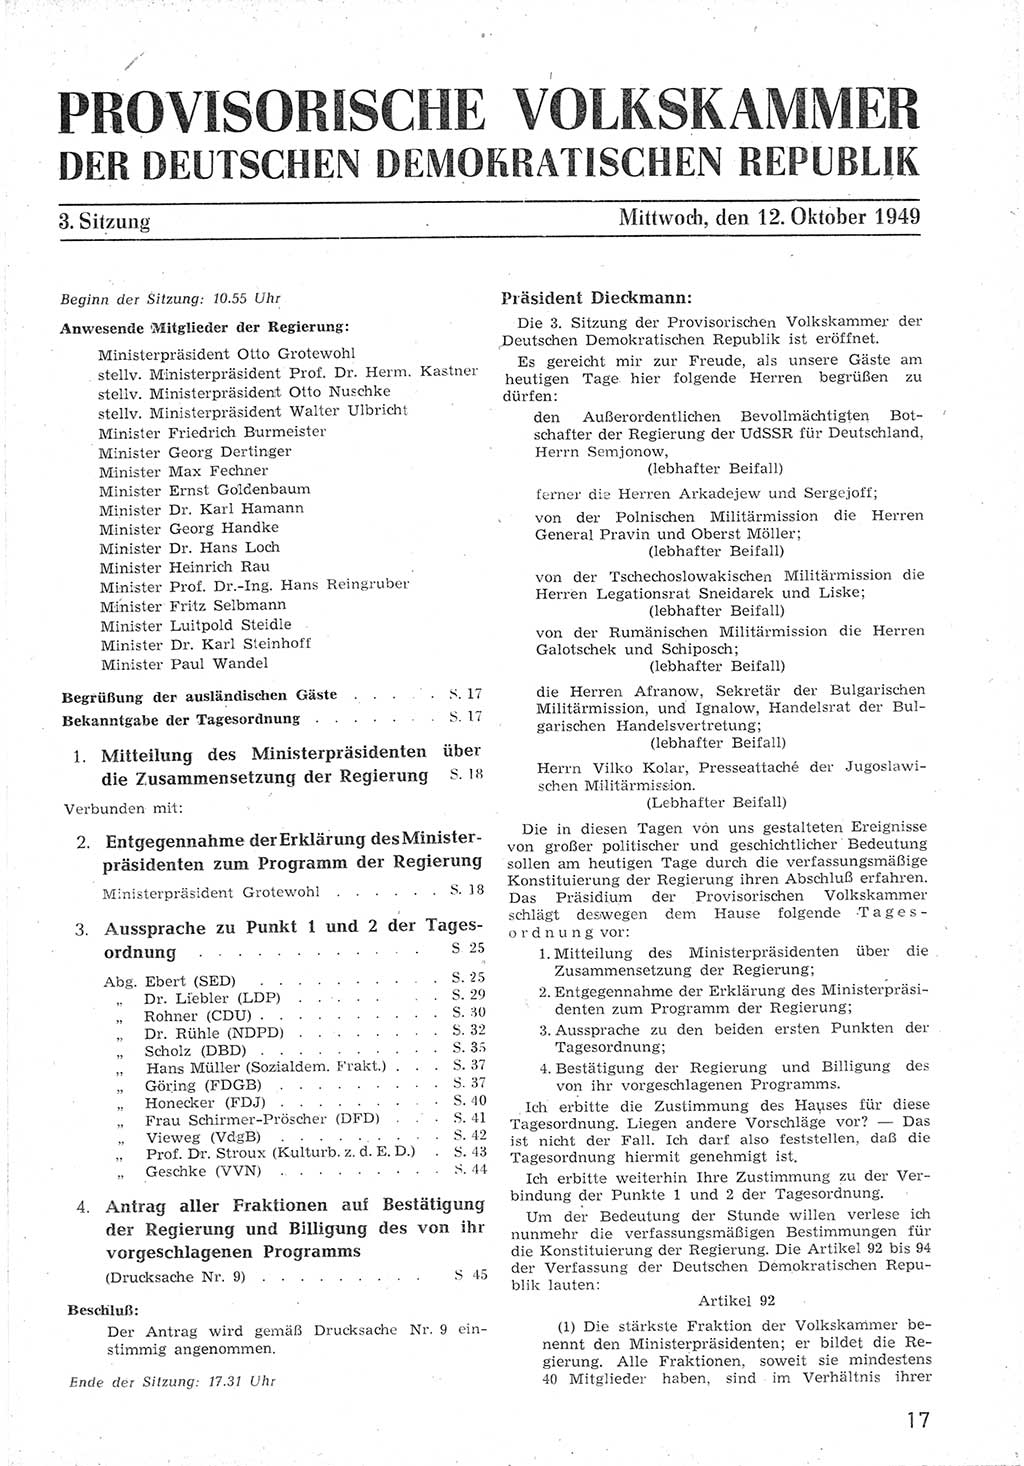 Provisorische Volkskammer (VK) der Deutschen Demokratischen Republik (DDR) 1949-1950, Dokument 29 (Prov. VK DDR 1949-1950, Dok. 29)